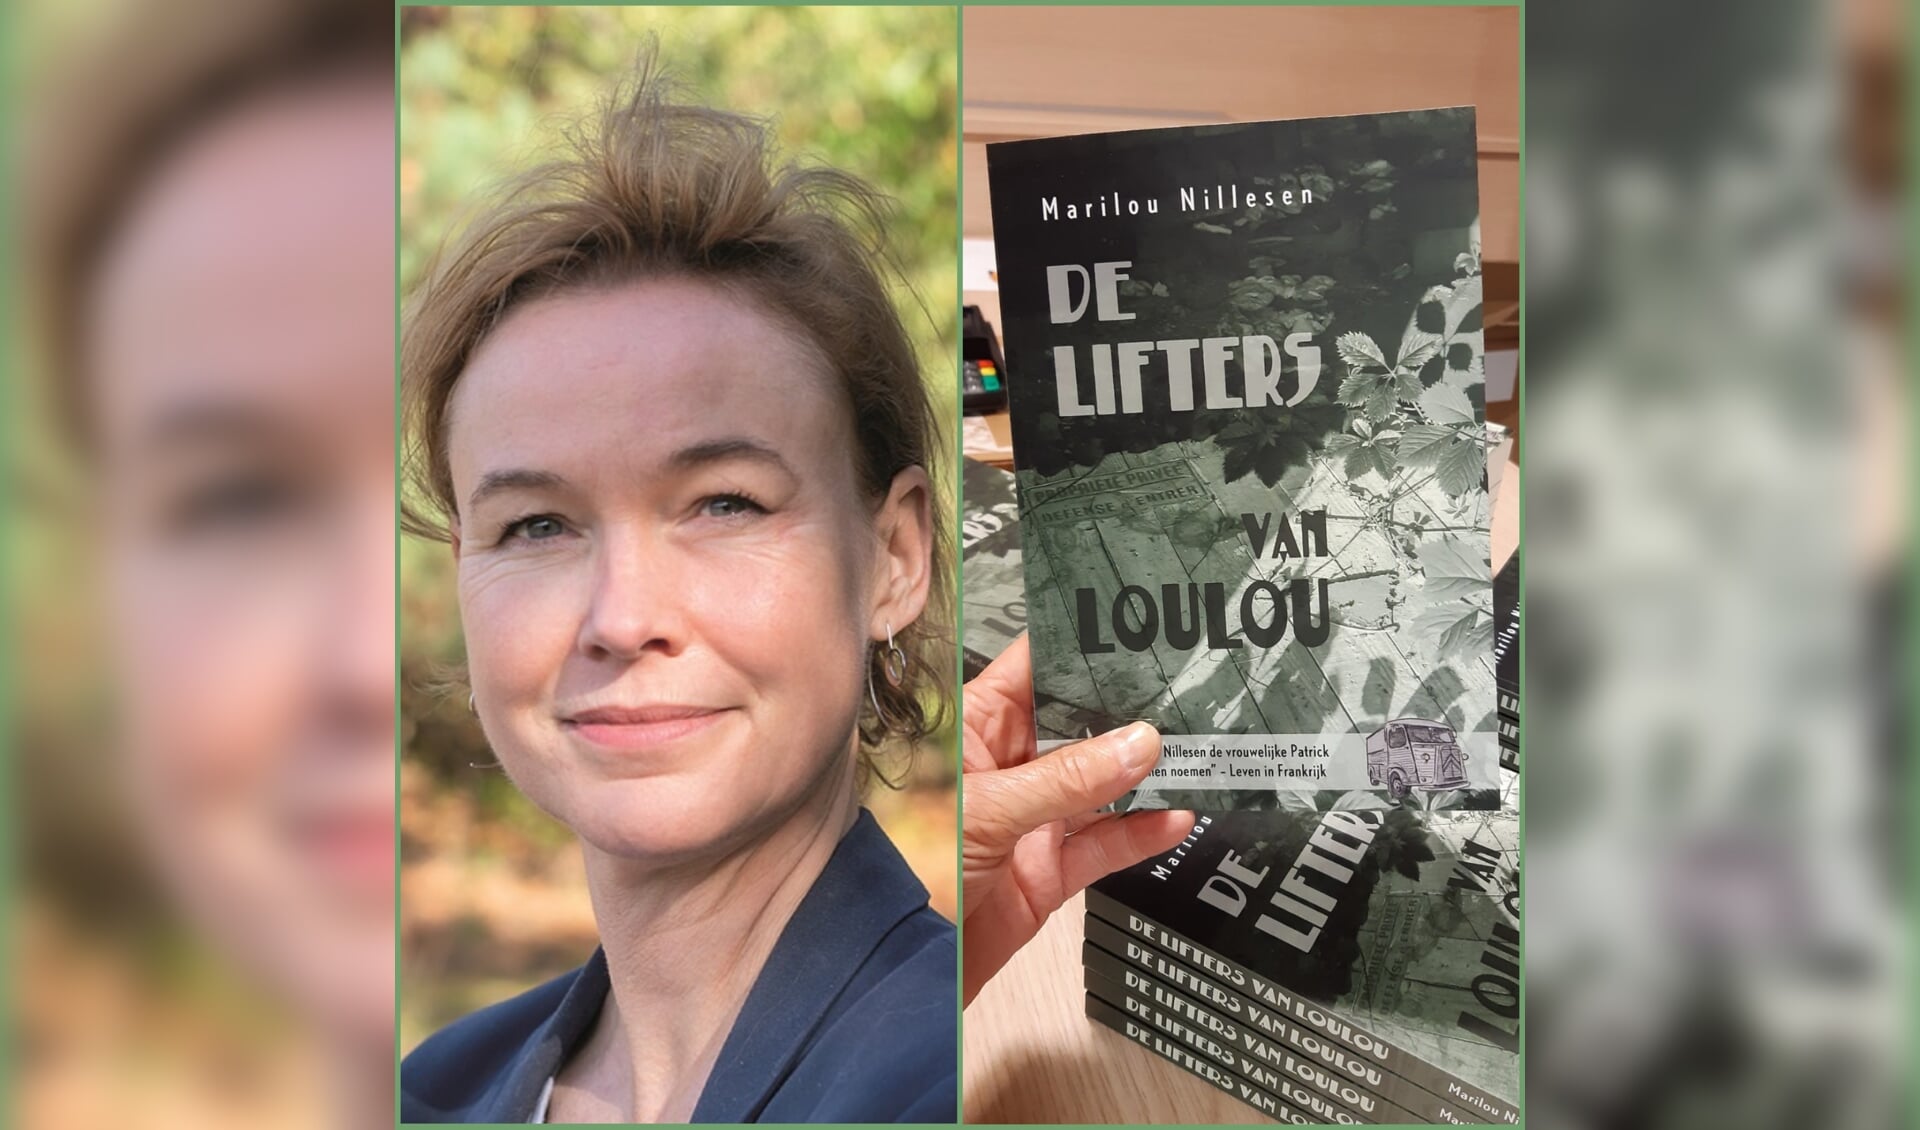 Marilou Nillesen en haar boek 'De Lifters van Loulou'.